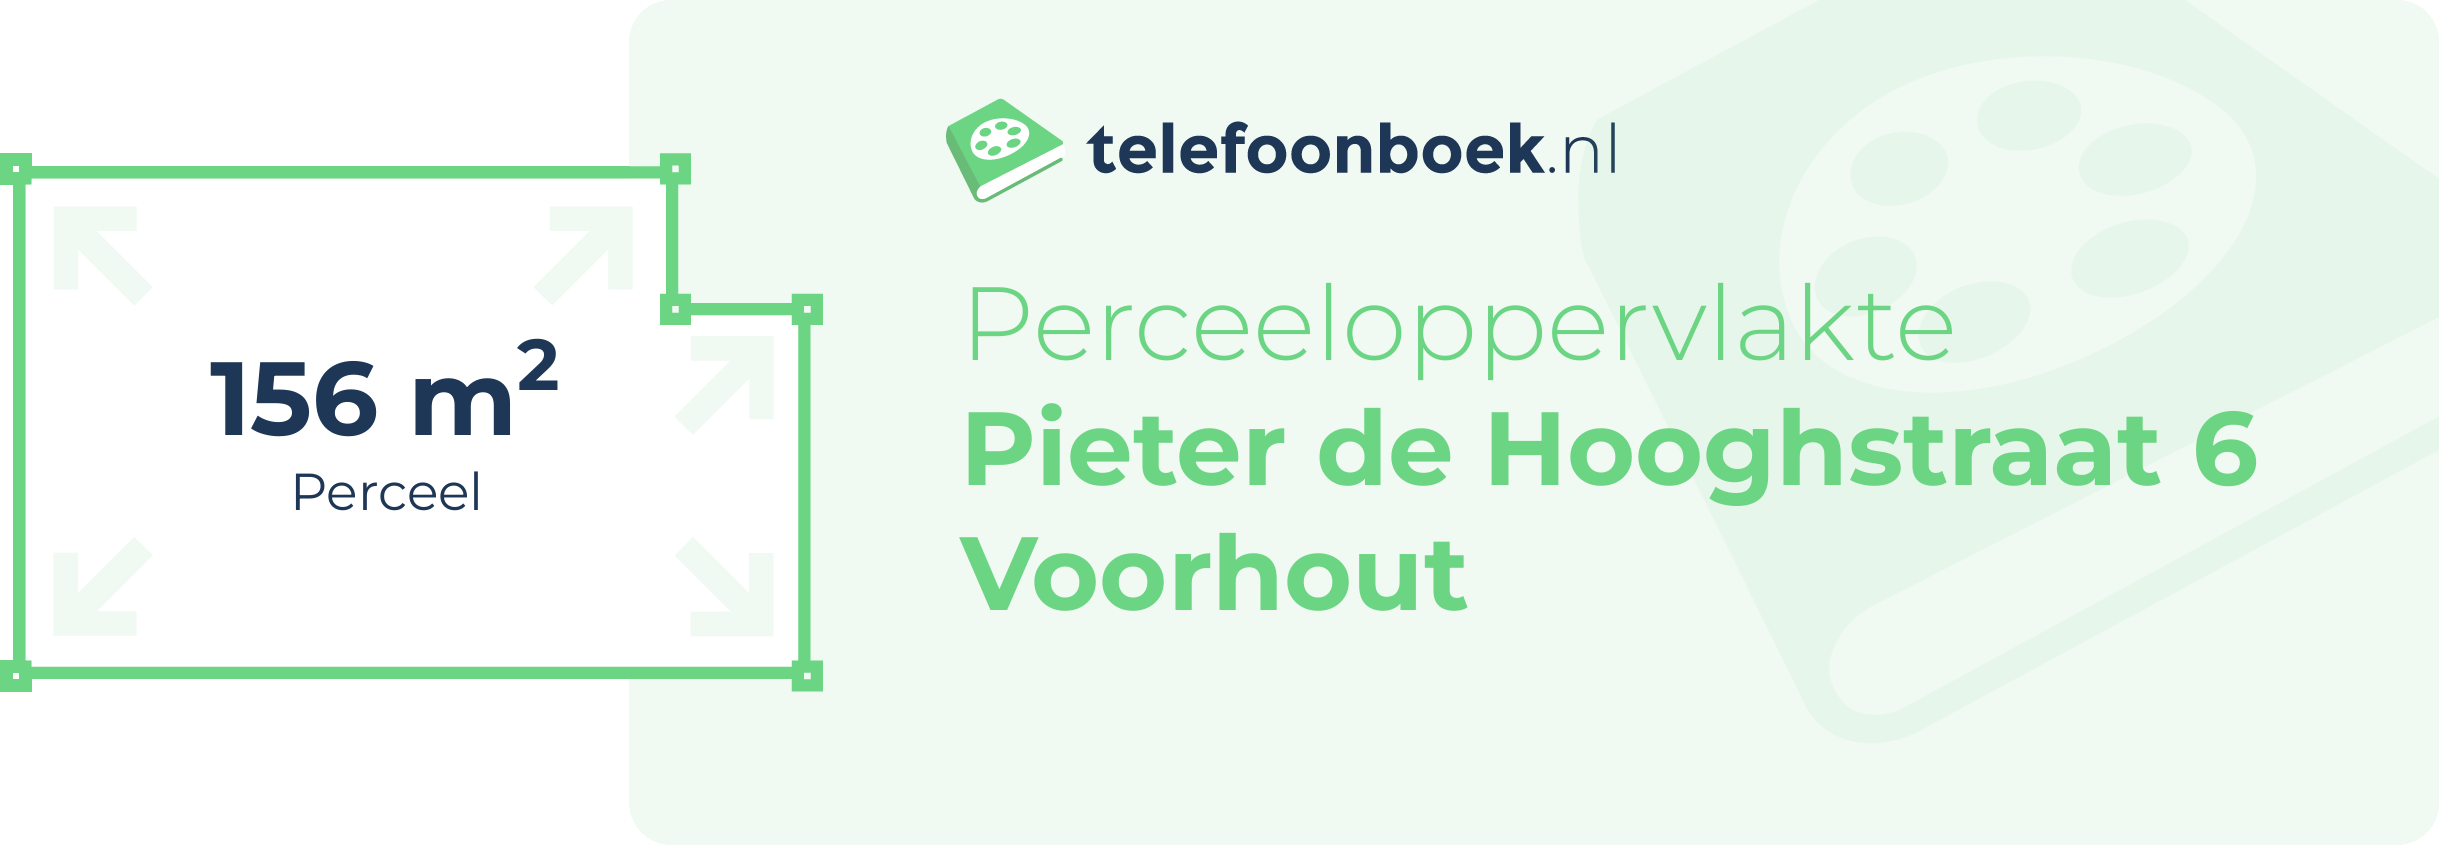 Perceeloppervlakte Pieter De Hooghstraat 6 Voorhout